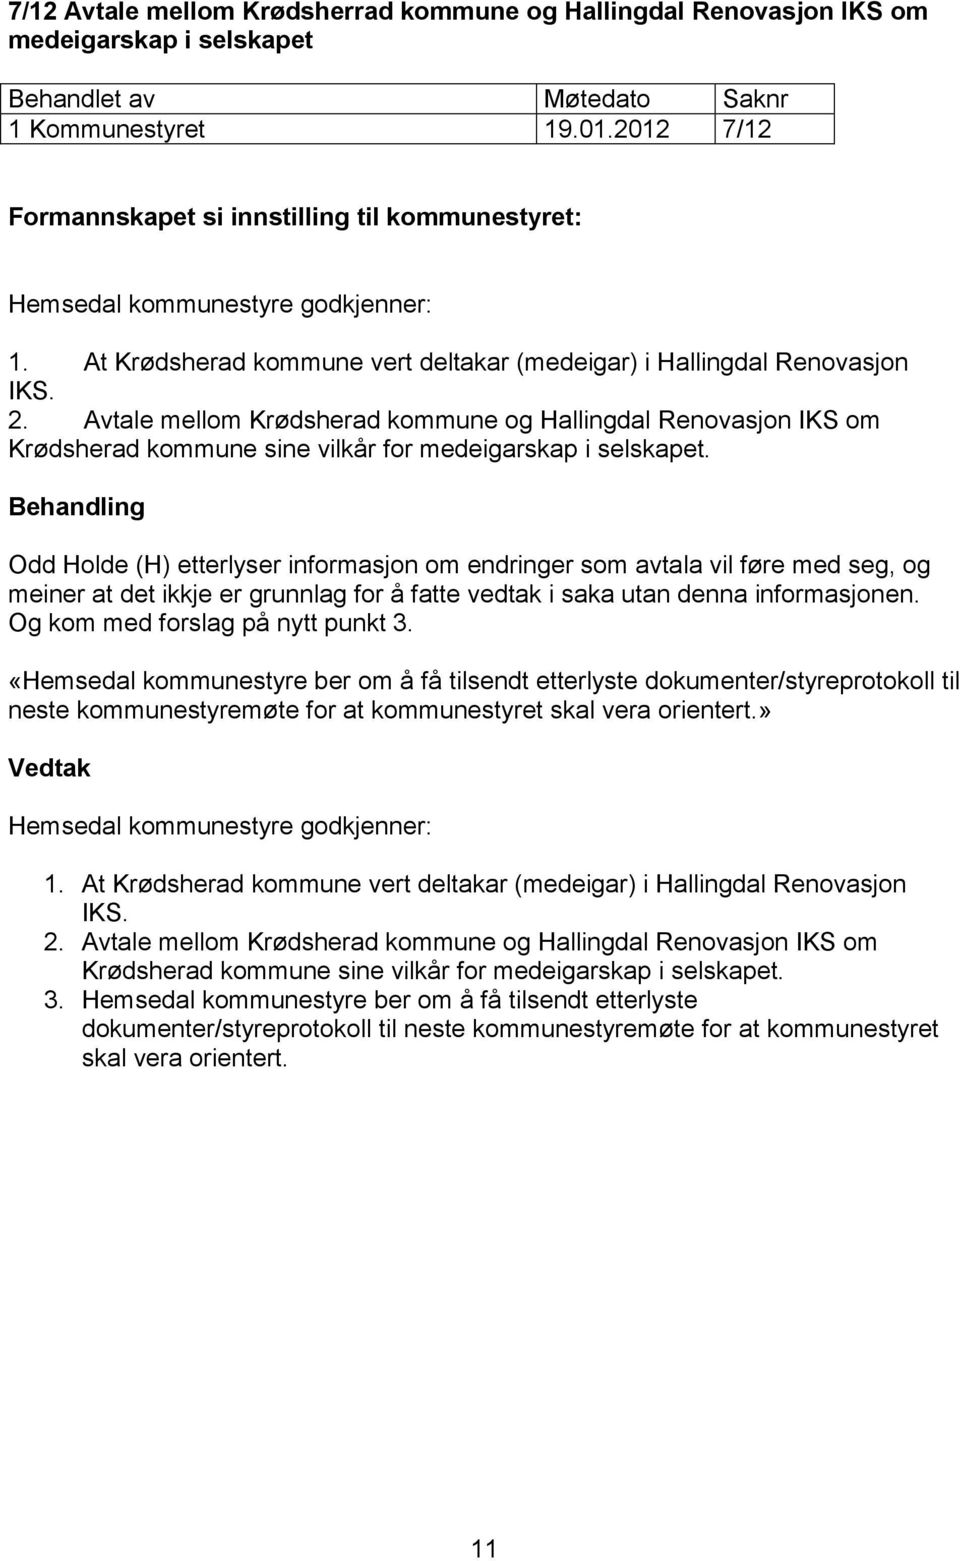 Avtale mellom Krødsherad kommune og Hallingdal Renovasjon IKS om Krødsherad kommune sine vilkår for medeigarskap i selskapet.